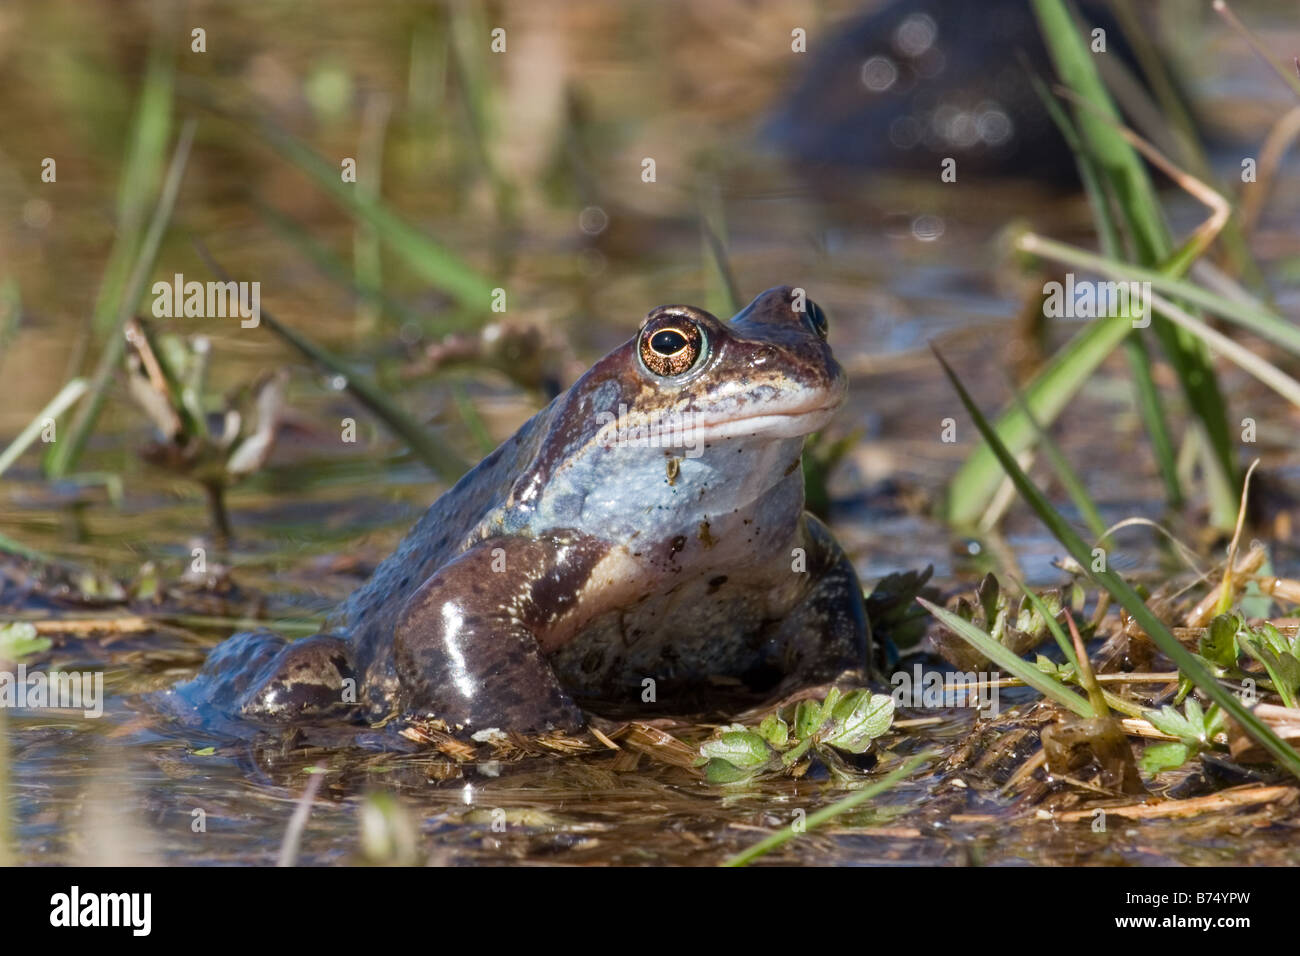 Common Frog, Rana temporaria Stock Photo